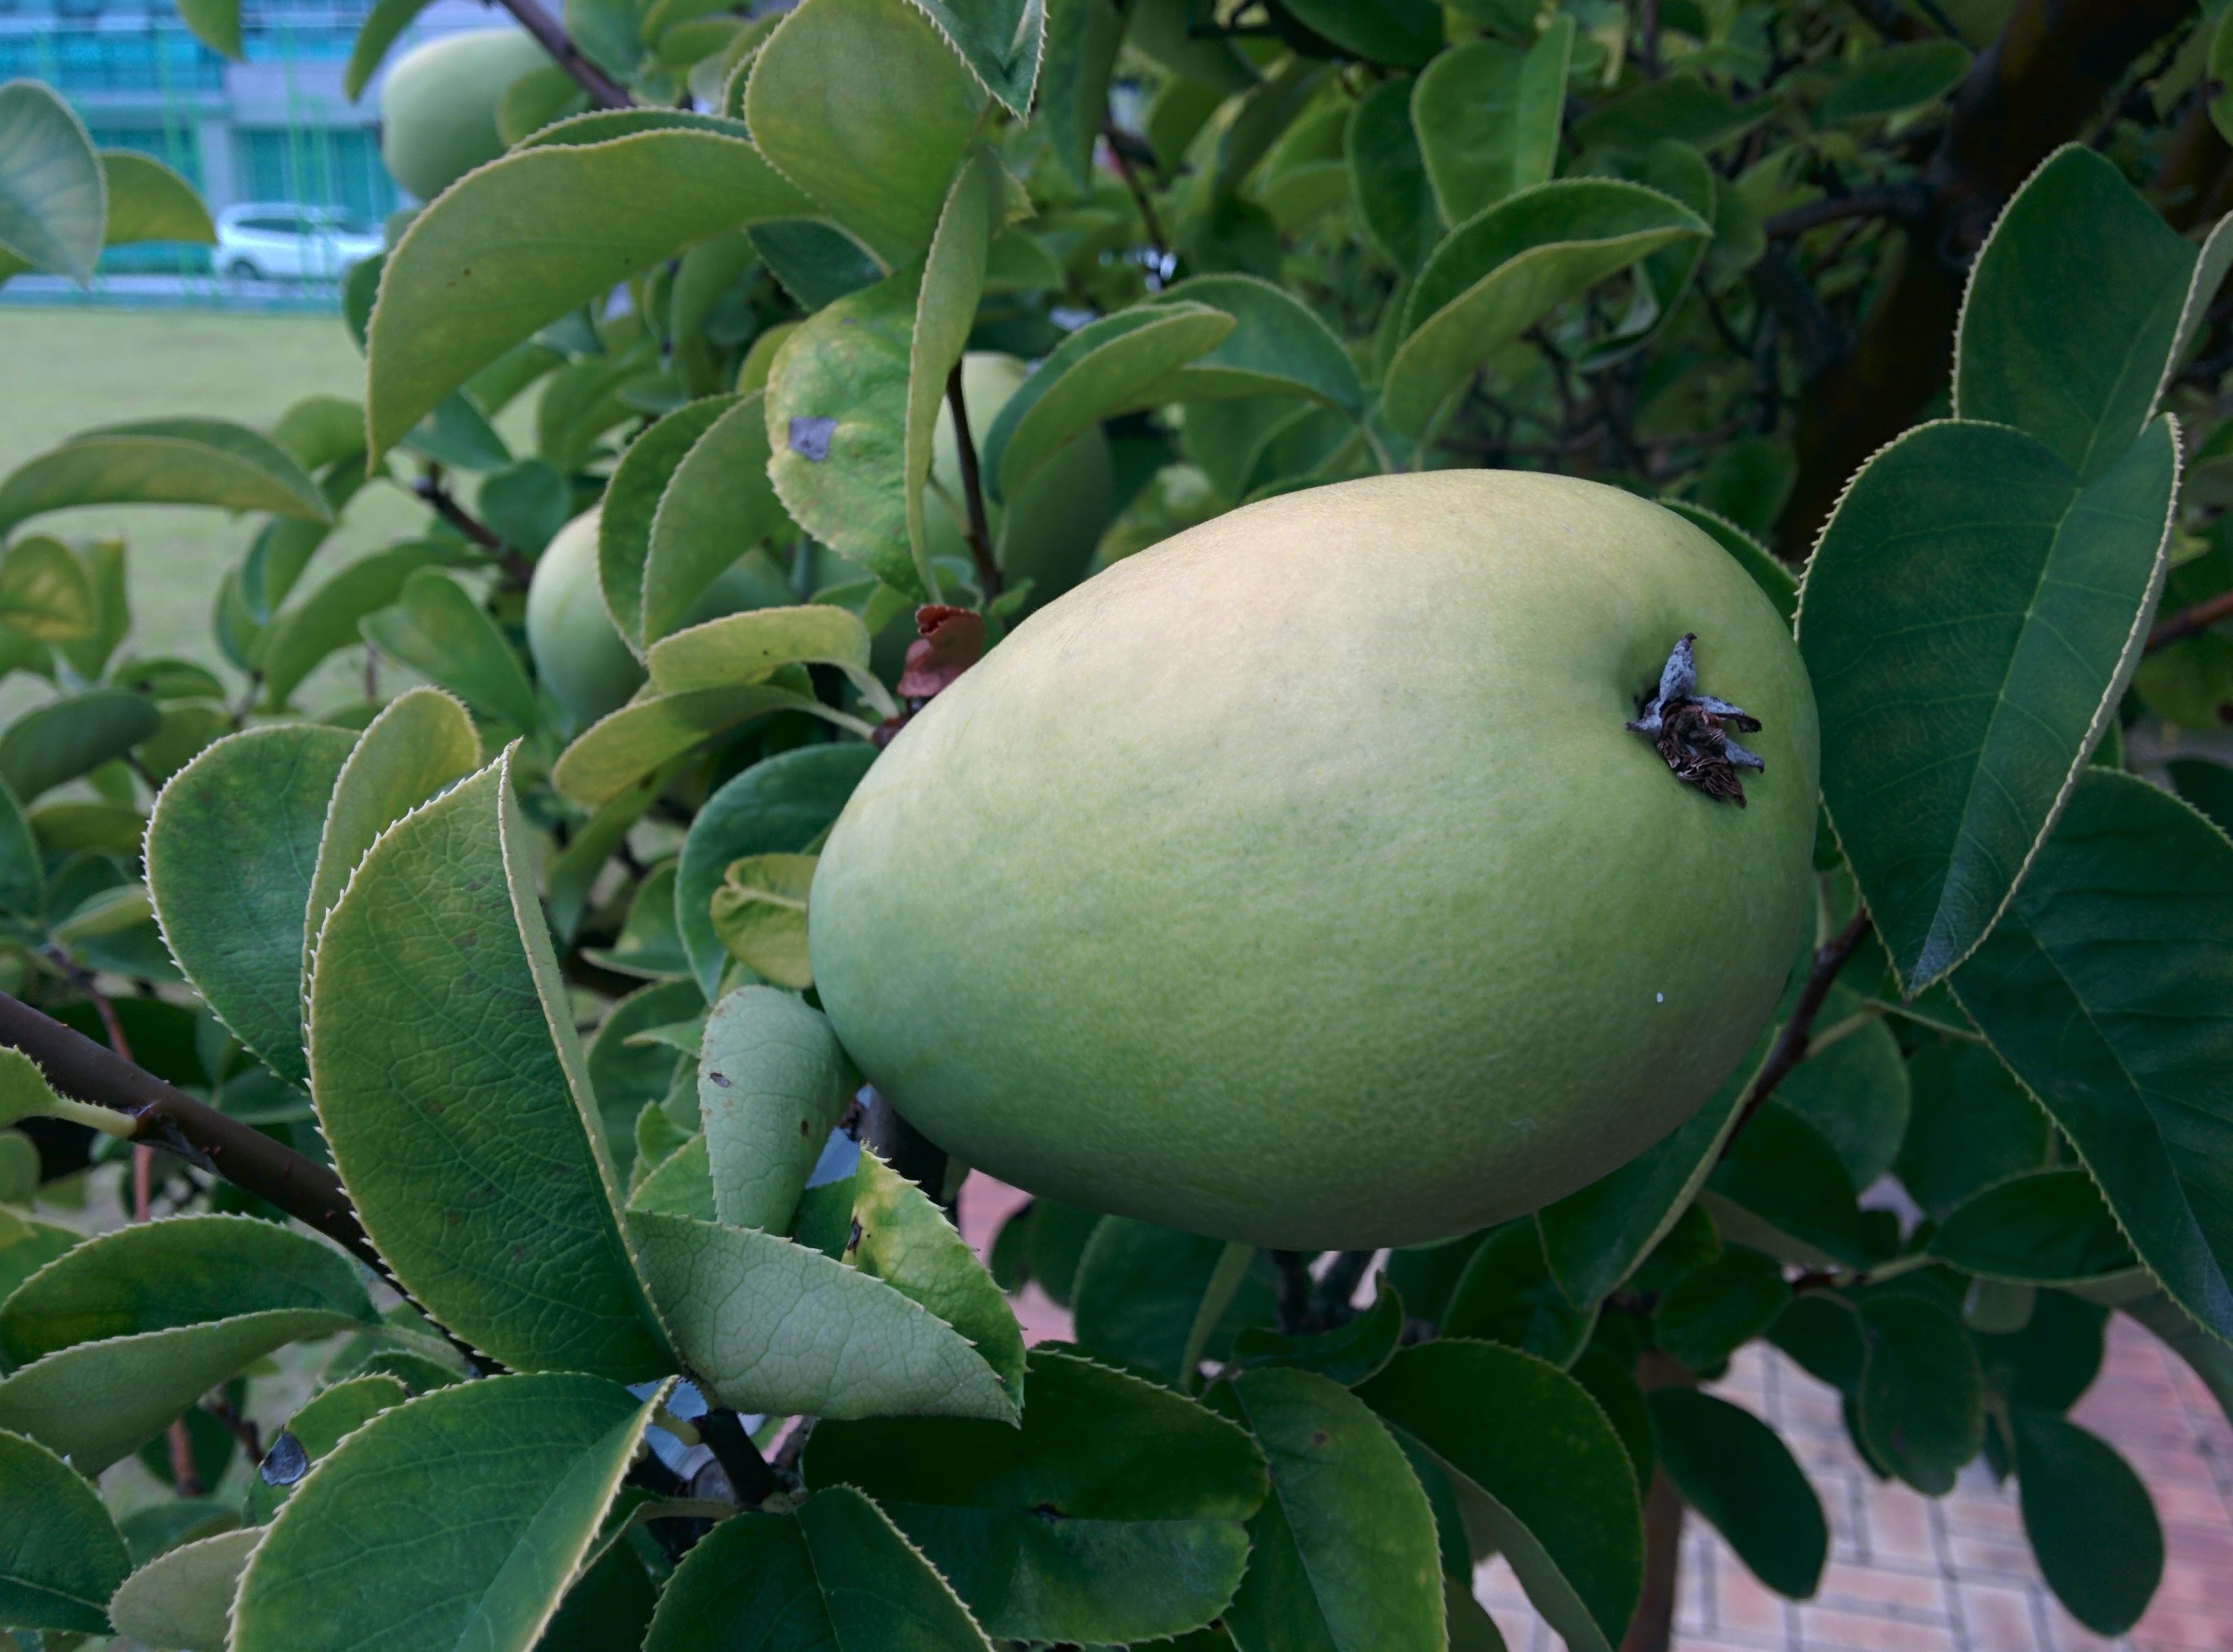 IMG_20150916_164940.jpg 과학기술연합대학원대학교 모과나무에 모과열매가 주렁주렁